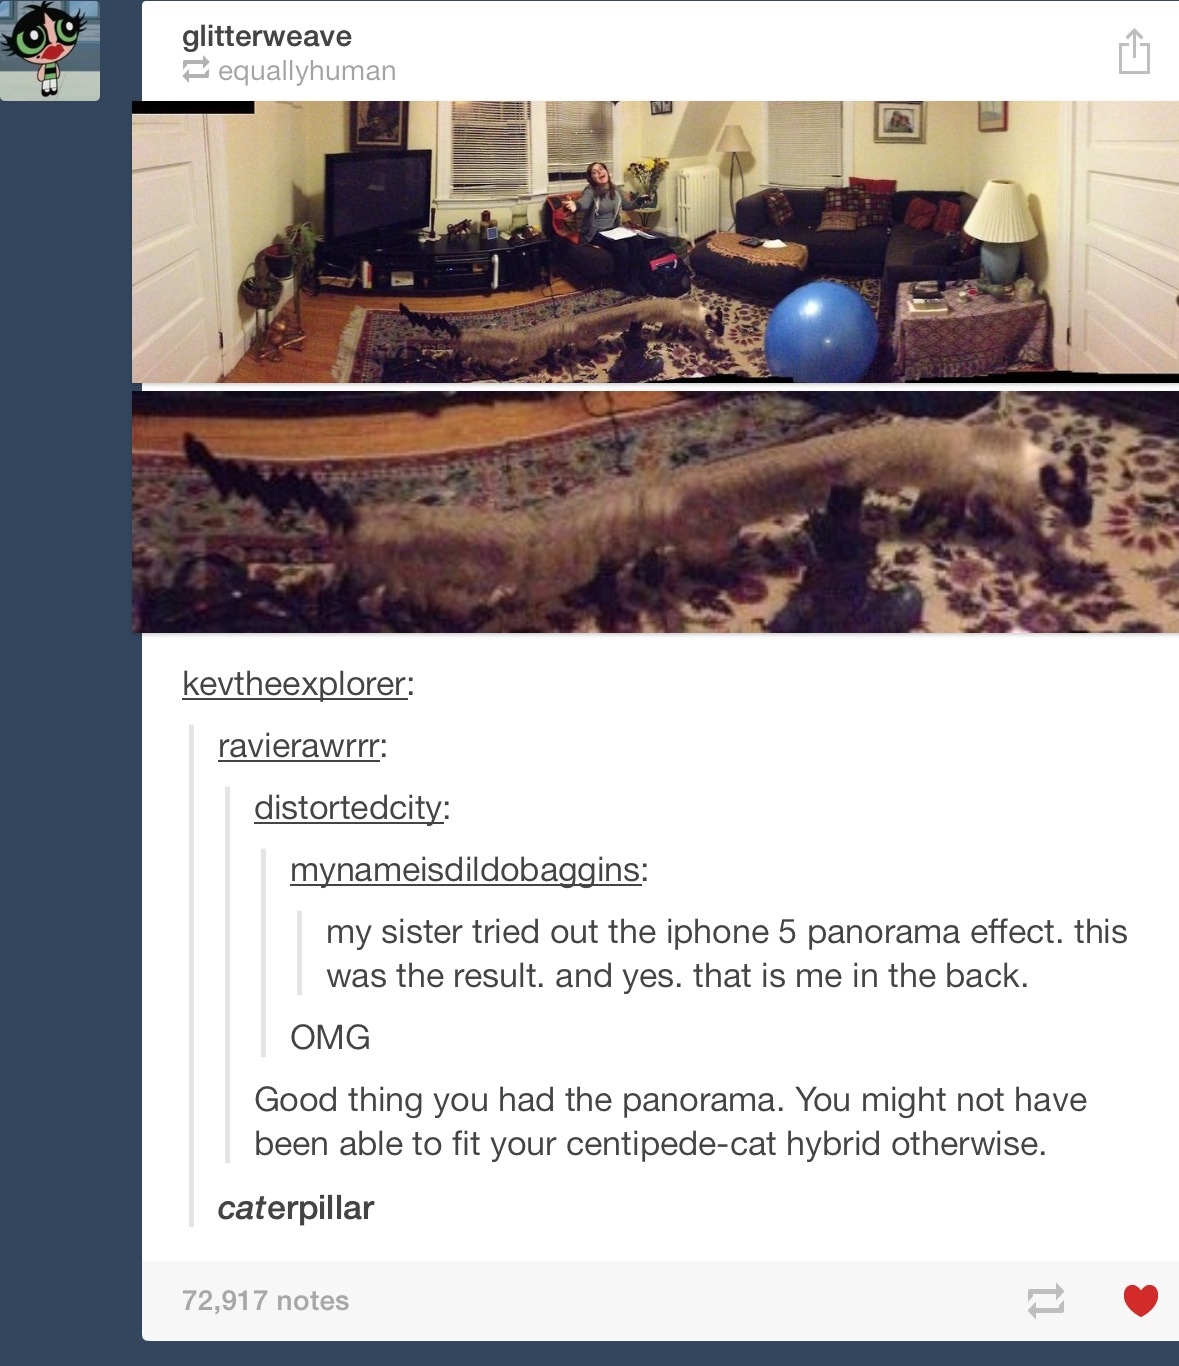 A CATerpillar